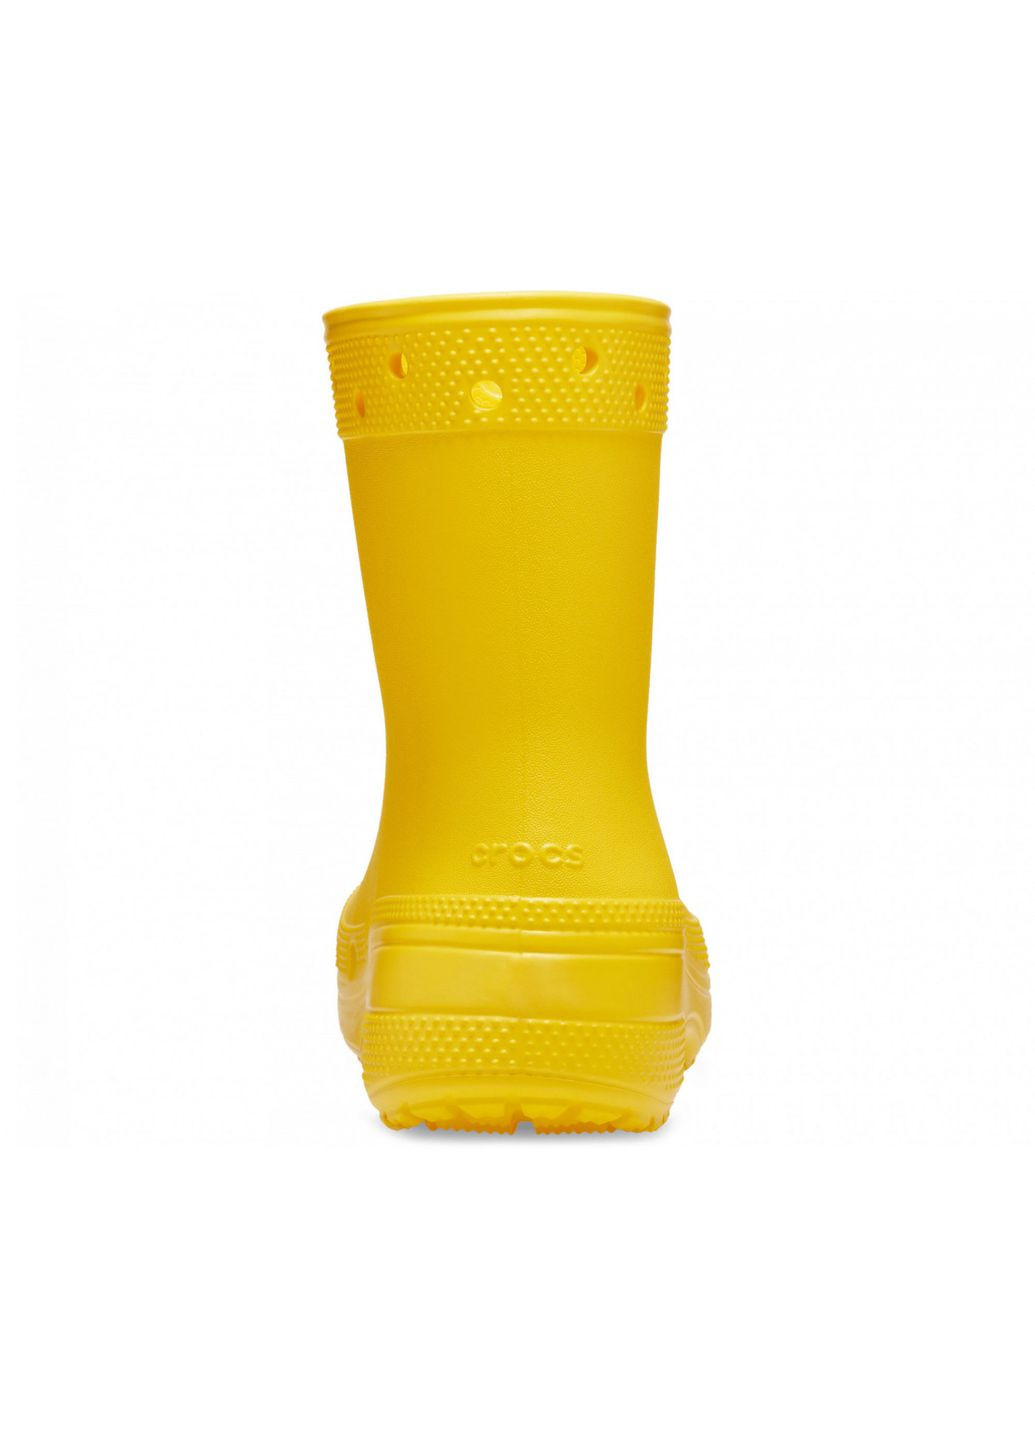 Желтые резиновые сапоги classic rain boot /m4w6/23 см sunflower 208363 Crocs